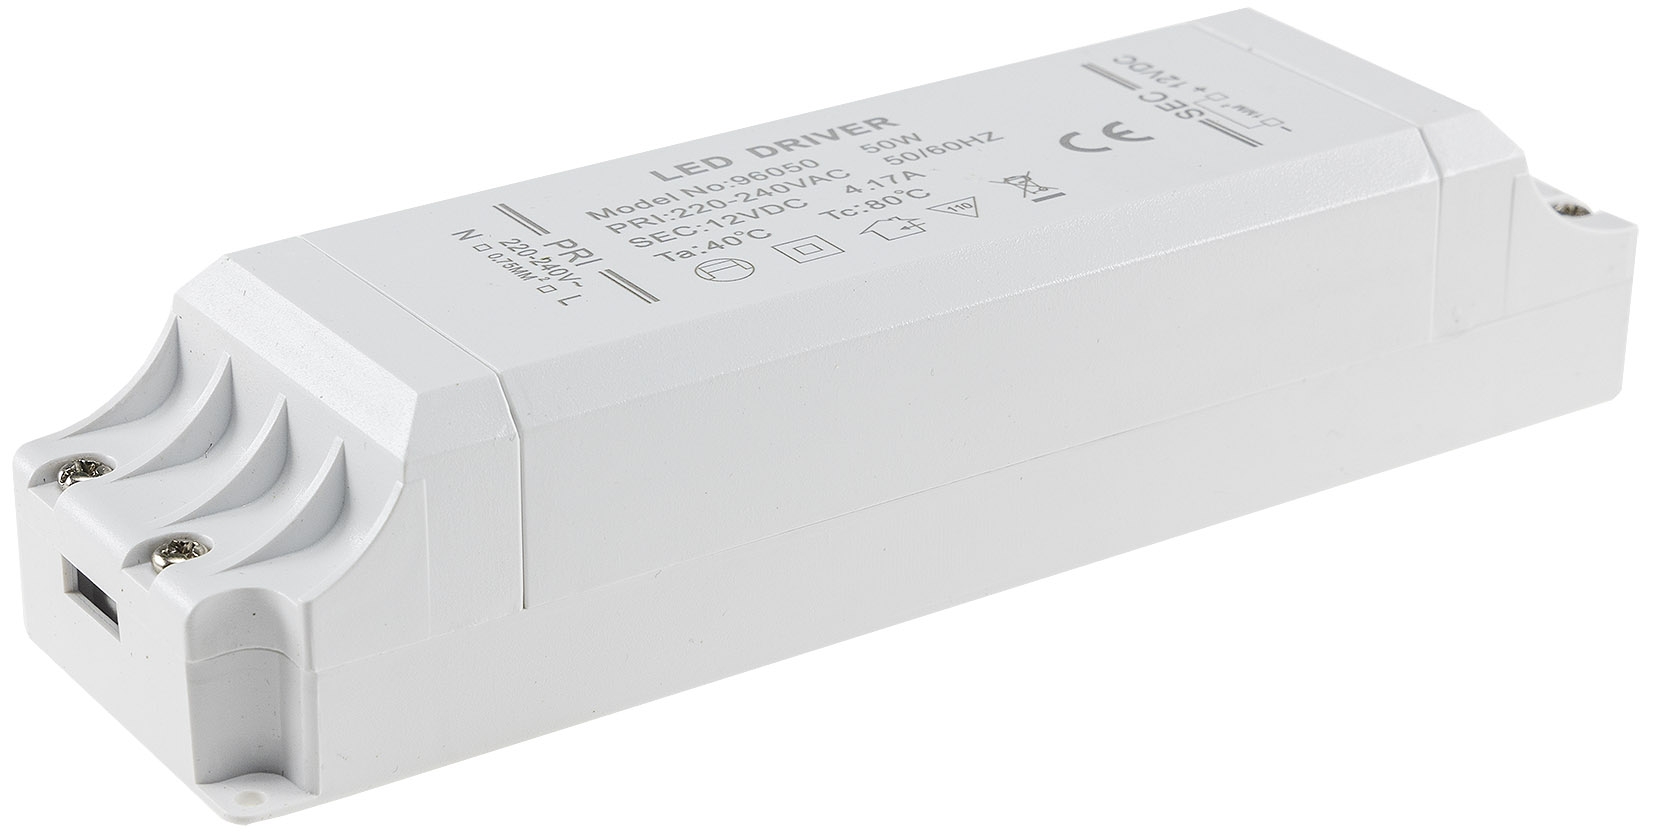 Elektronischer LED Trafo 1 -> 50Watt für LED Lampen oder Stripes -  stabilisierte Spannung. - Lichtfaktor24